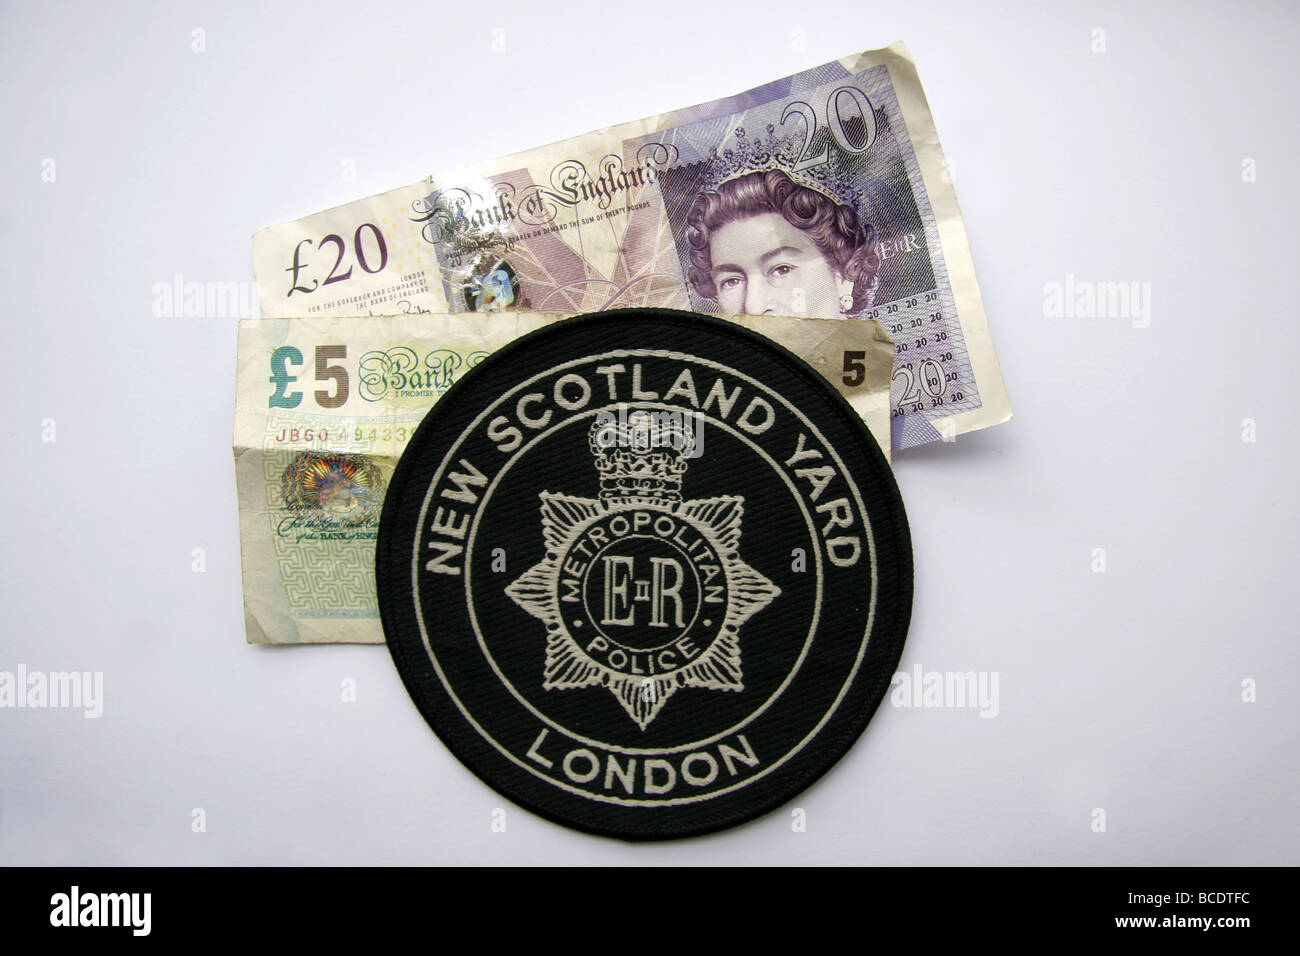 London Metropolitan Police New Scotland Yard Patch und britisches Geld Stockfoto